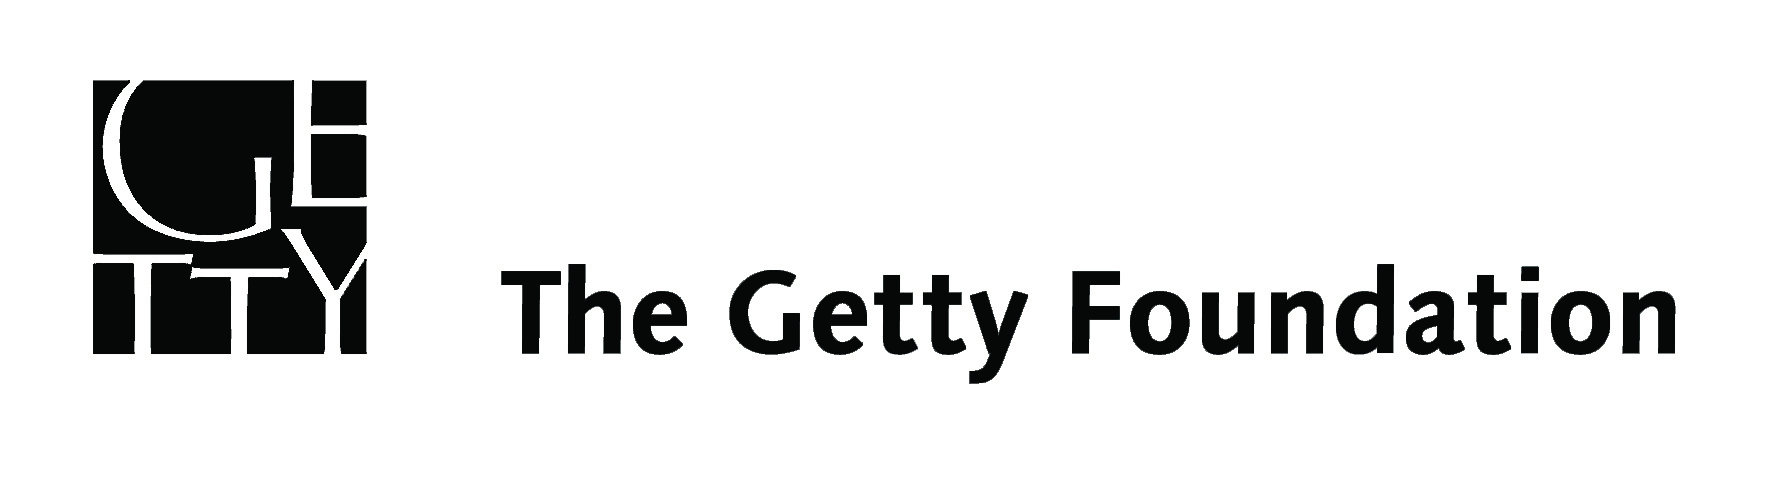 the_getty_foundation_logo_black_highres.jpg